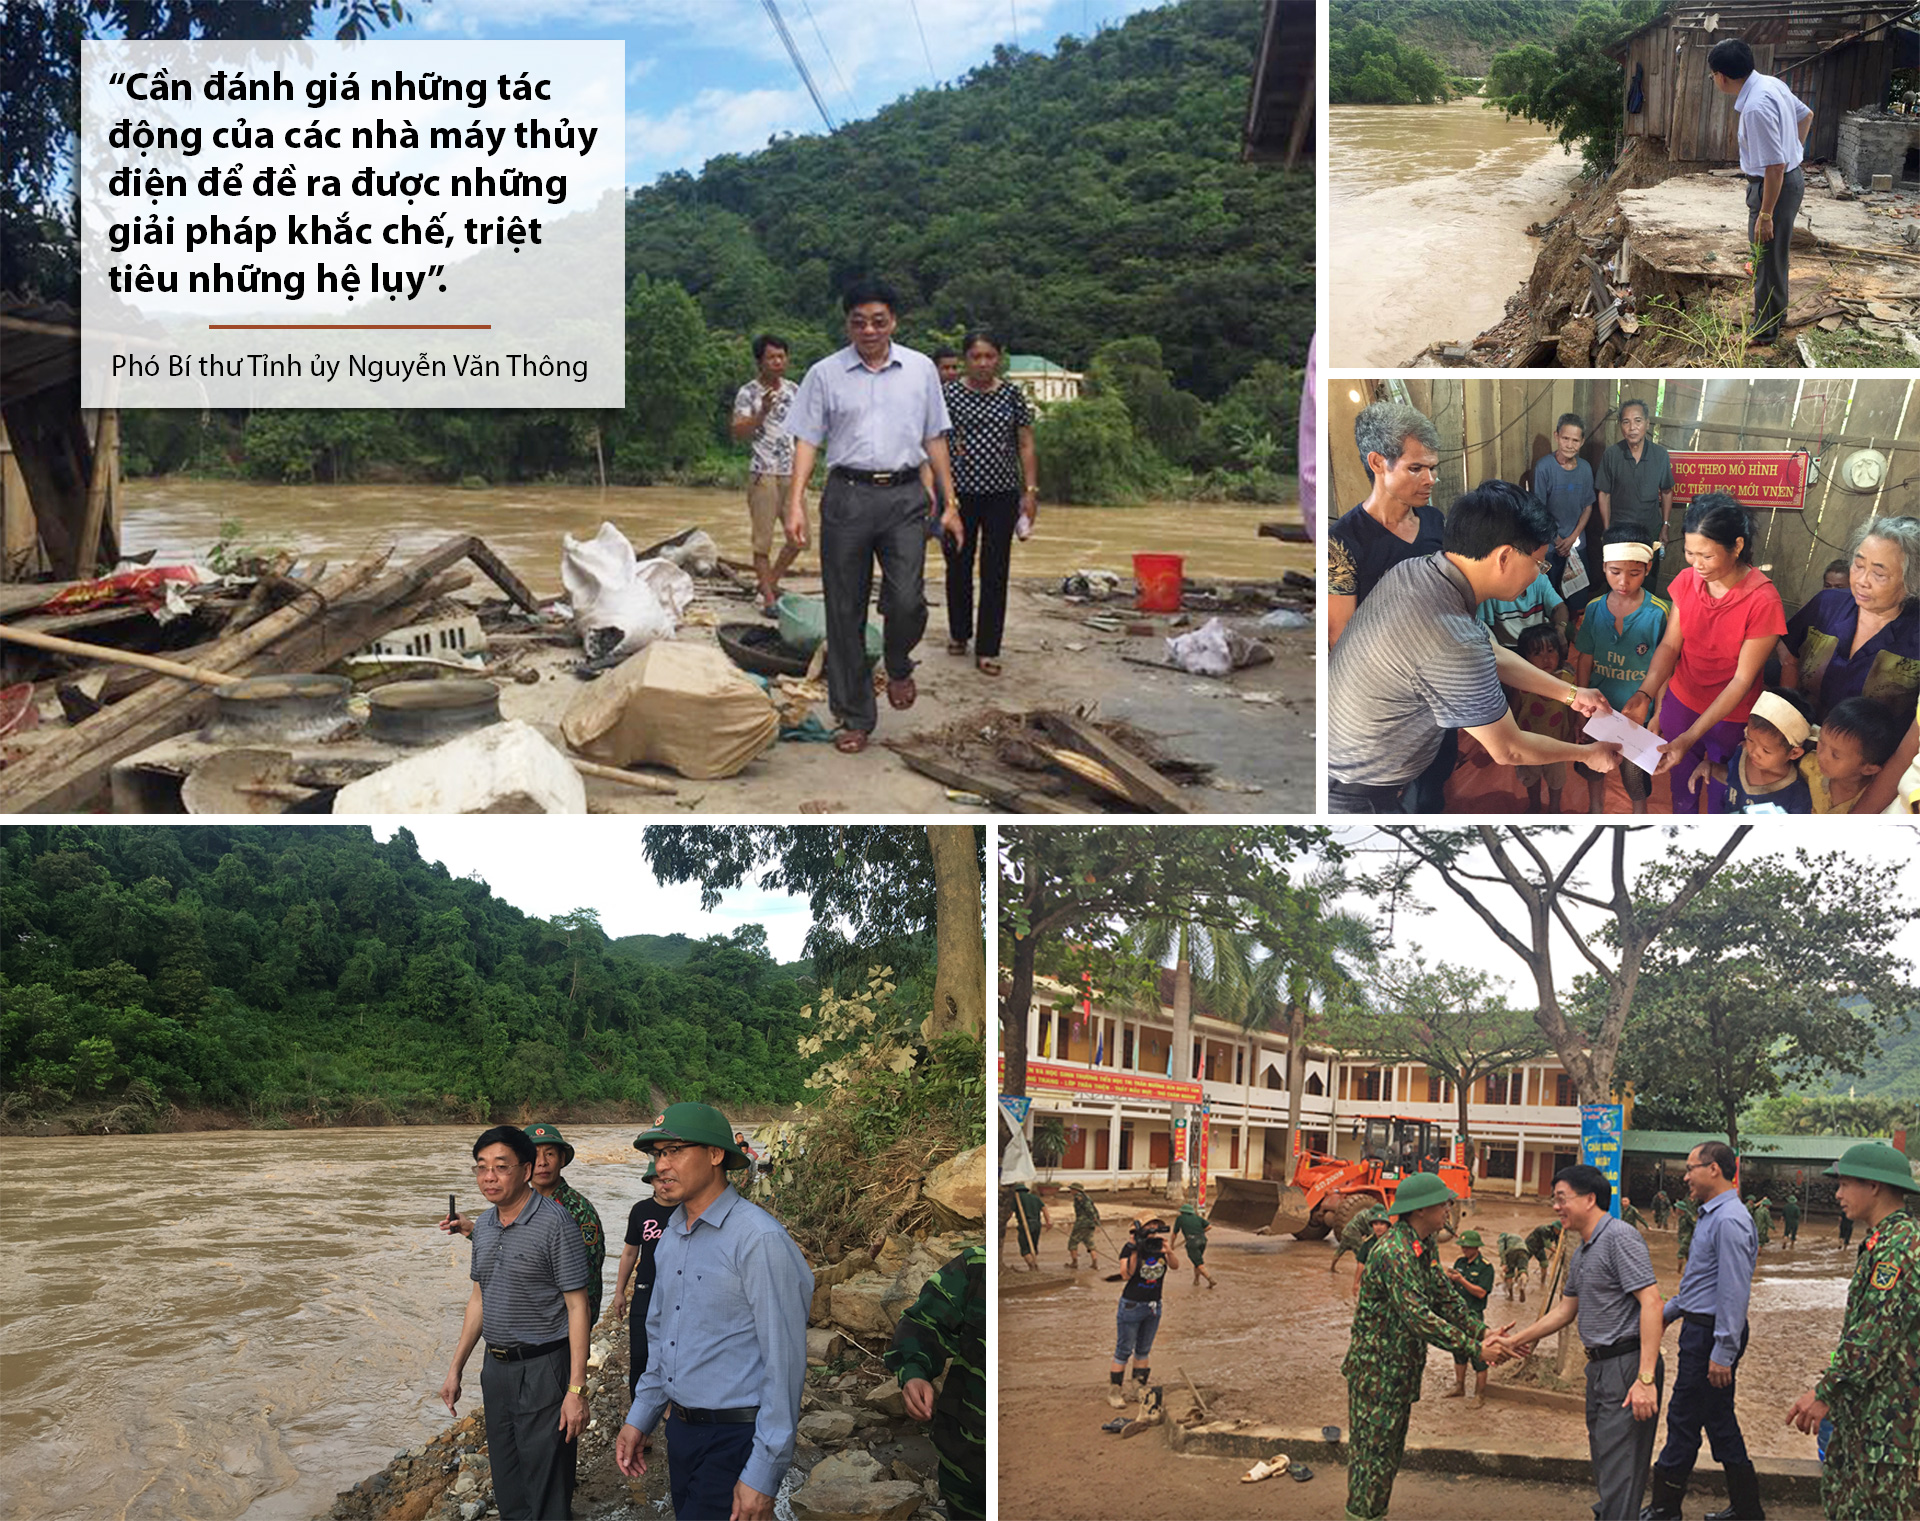 Phó Bí thư Tỉnh ủy Nguyễn Văn Thông kiểm tra tình hình thiệt hại, thăm hỏi, động viên người dân vùng lũ ở huyện Tương Dương, Kỳ Sơn.